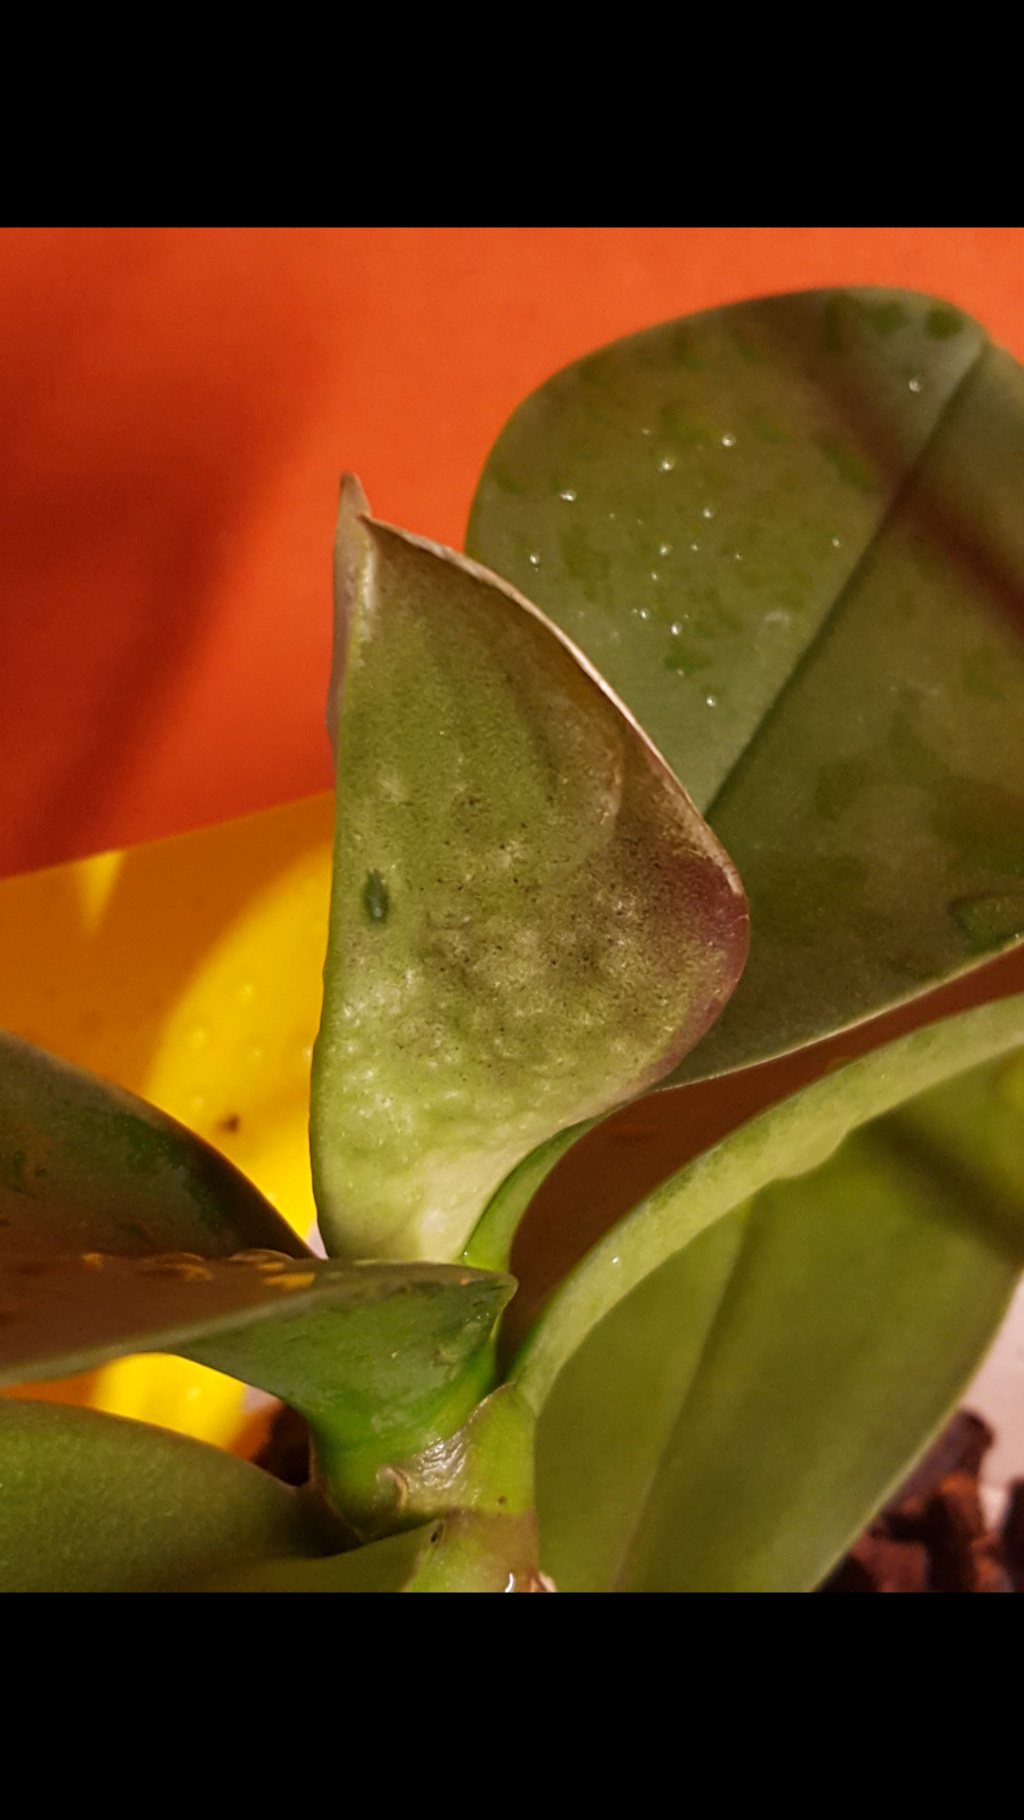 Knubbelige Blätter, weiß verfärbte Blattränder Screen10